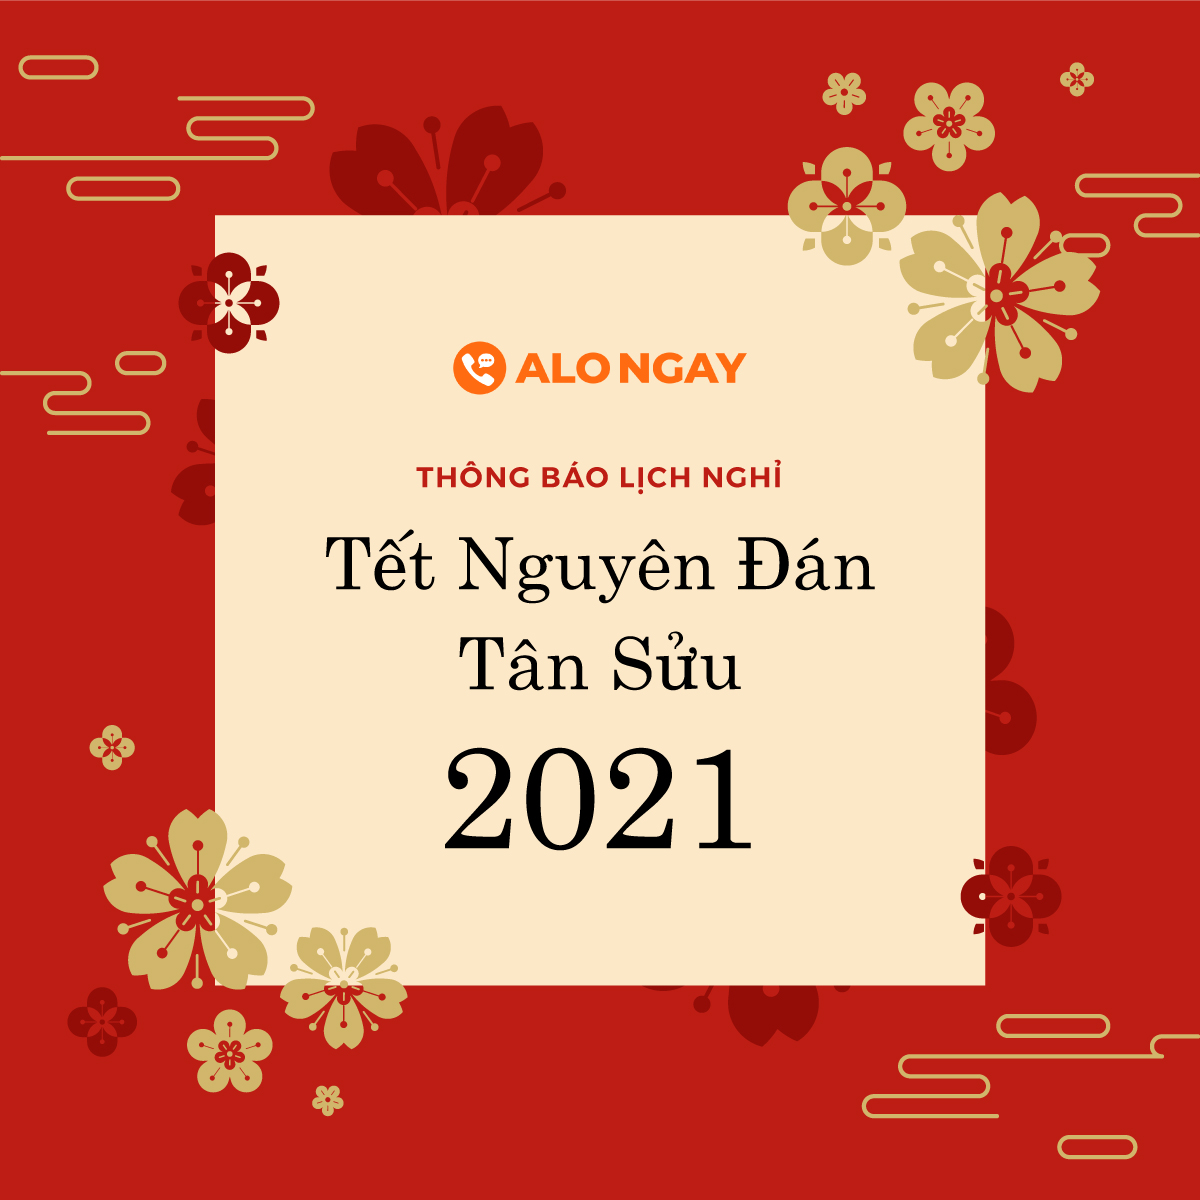 AloNgay.vn - Thông báo nghỉ tết Tân Sửu 2021